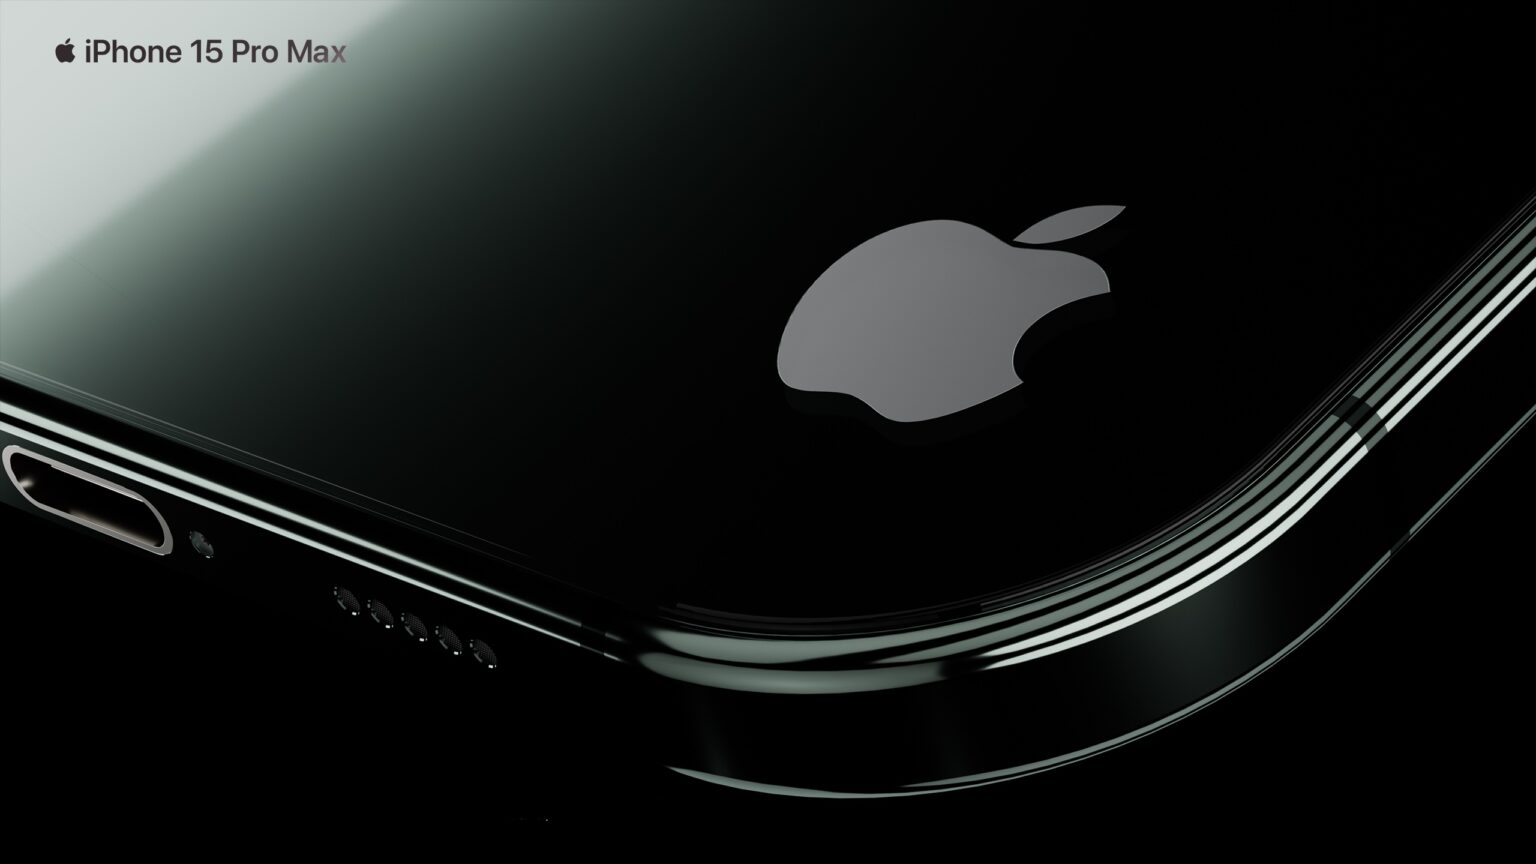 iPhone 15 Pro Max Concept